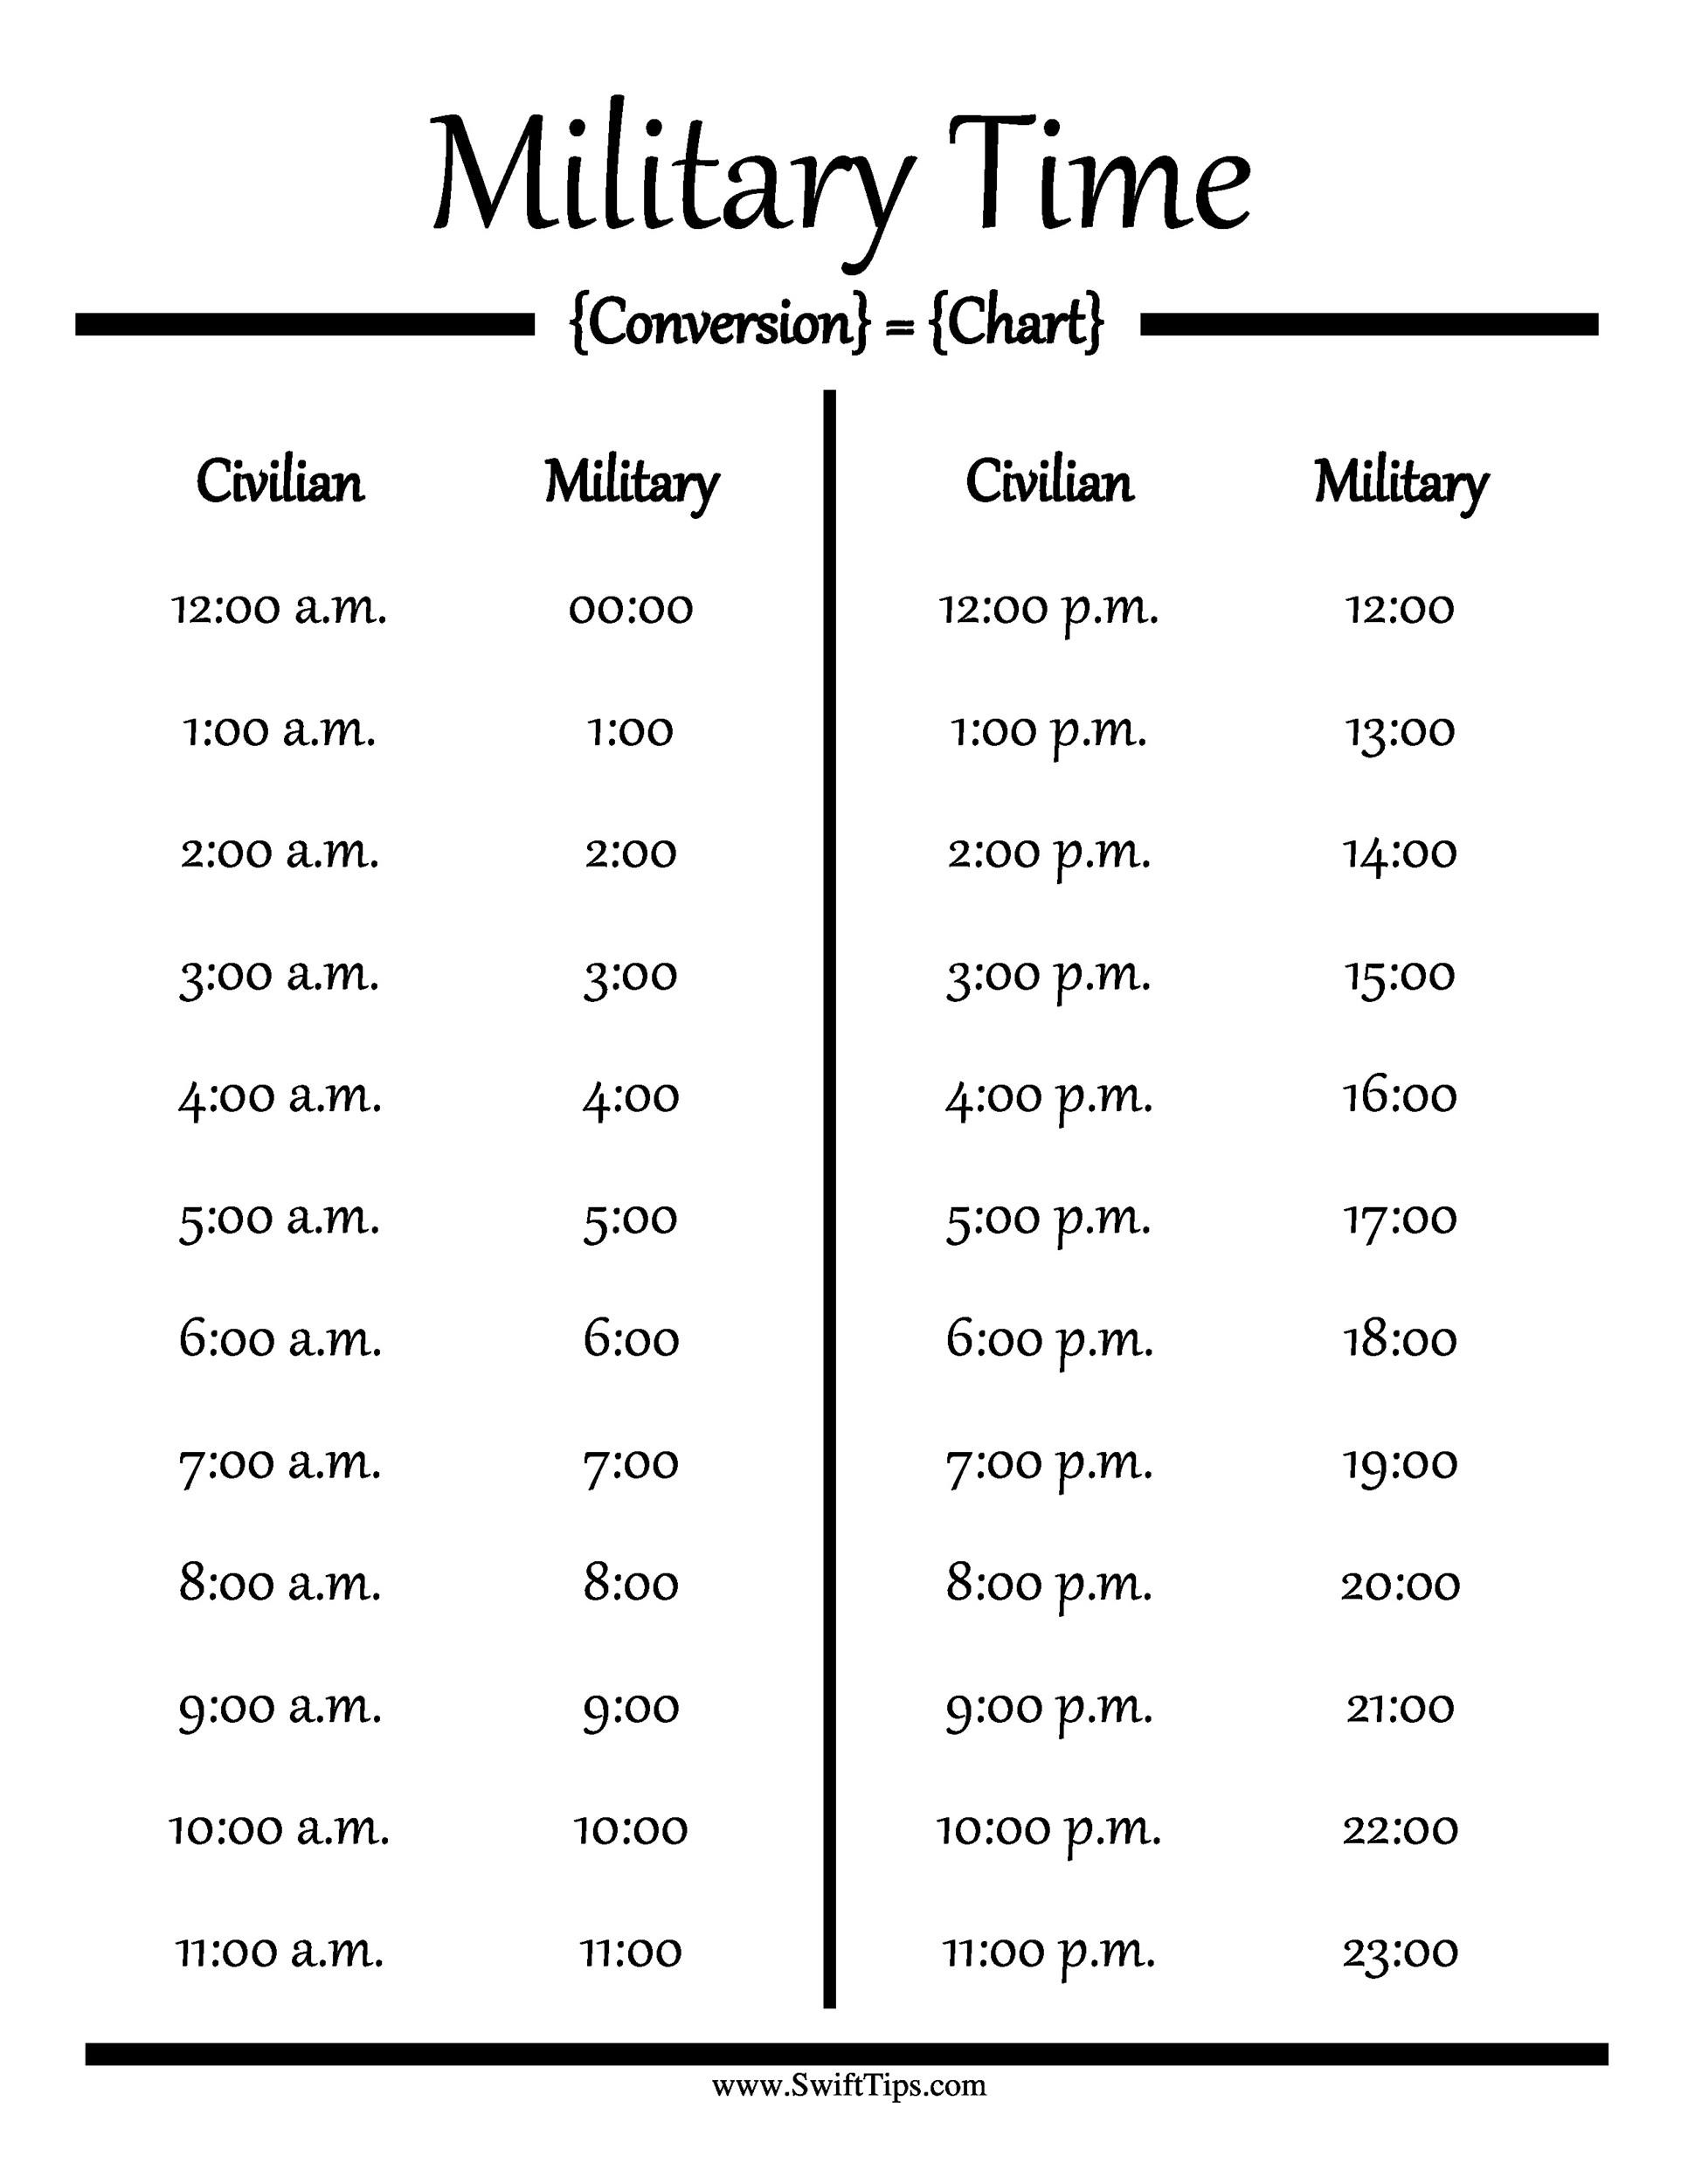 30 Printable Military Time Charts ᐅ TemplateLab